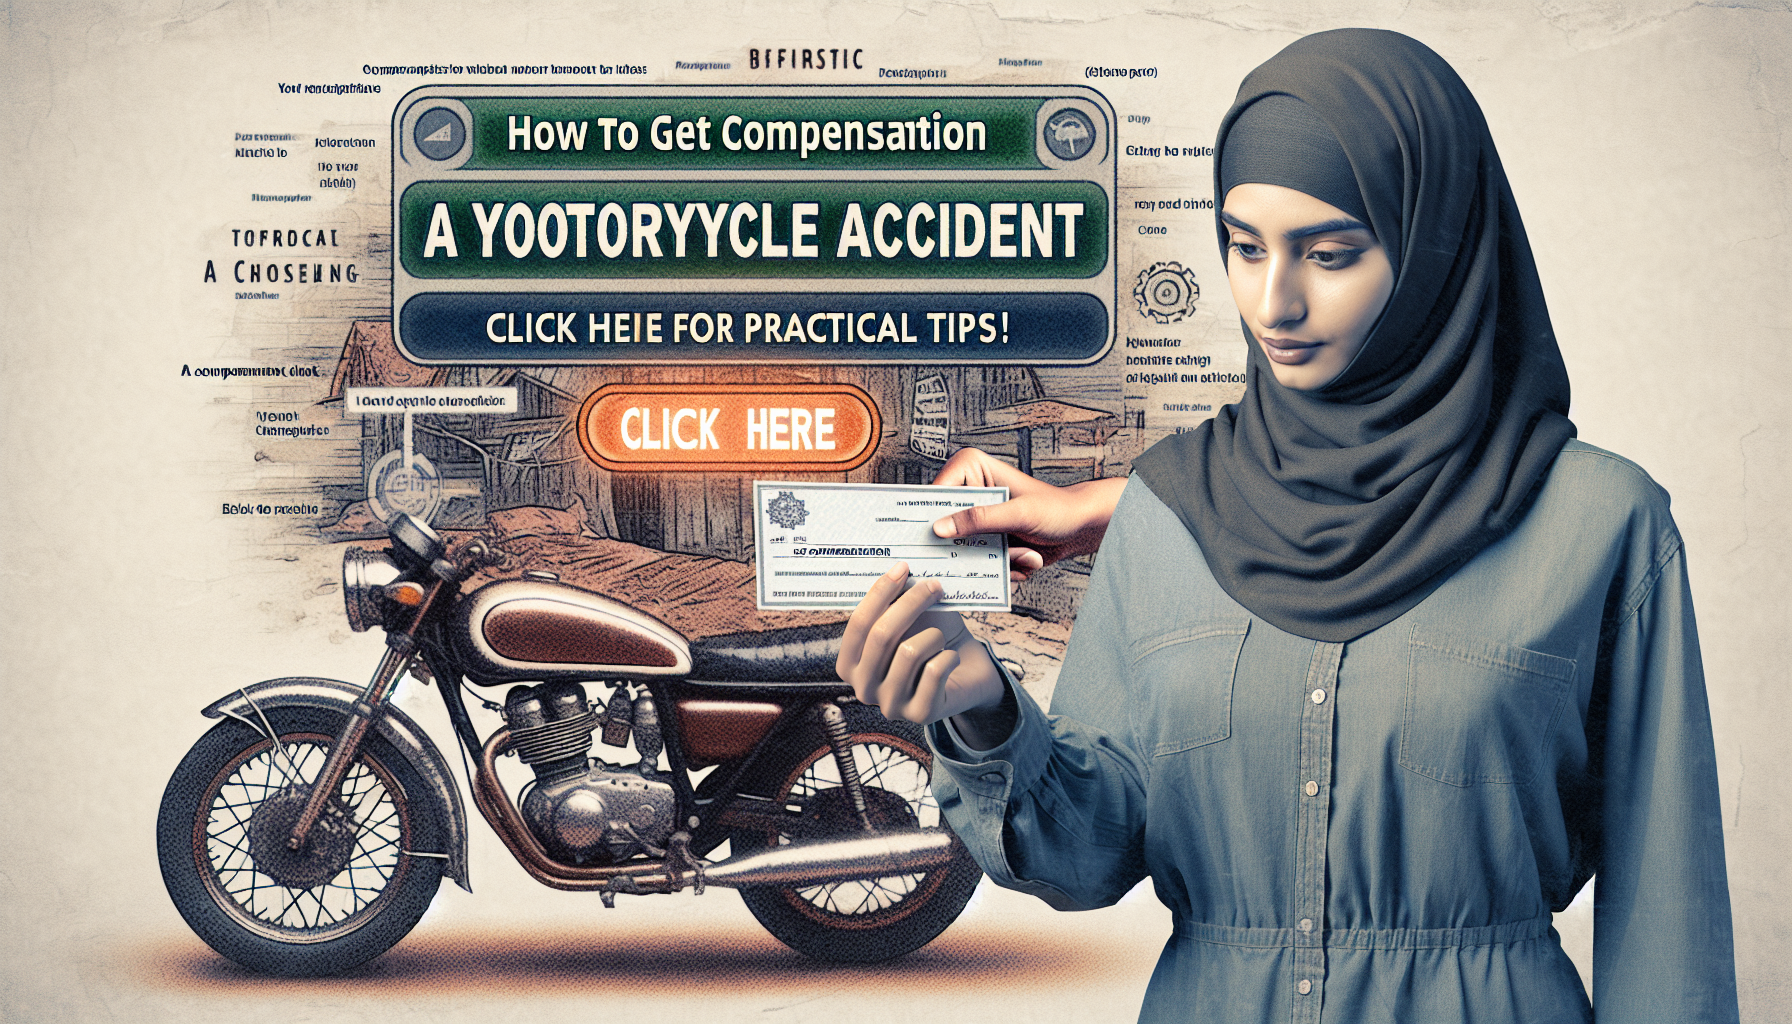 découvrez comment obtenir une indemnisation après un accident de moto en suivant les étapes et les conseils indispensables pour être indemnisé de manière juste et équitable.